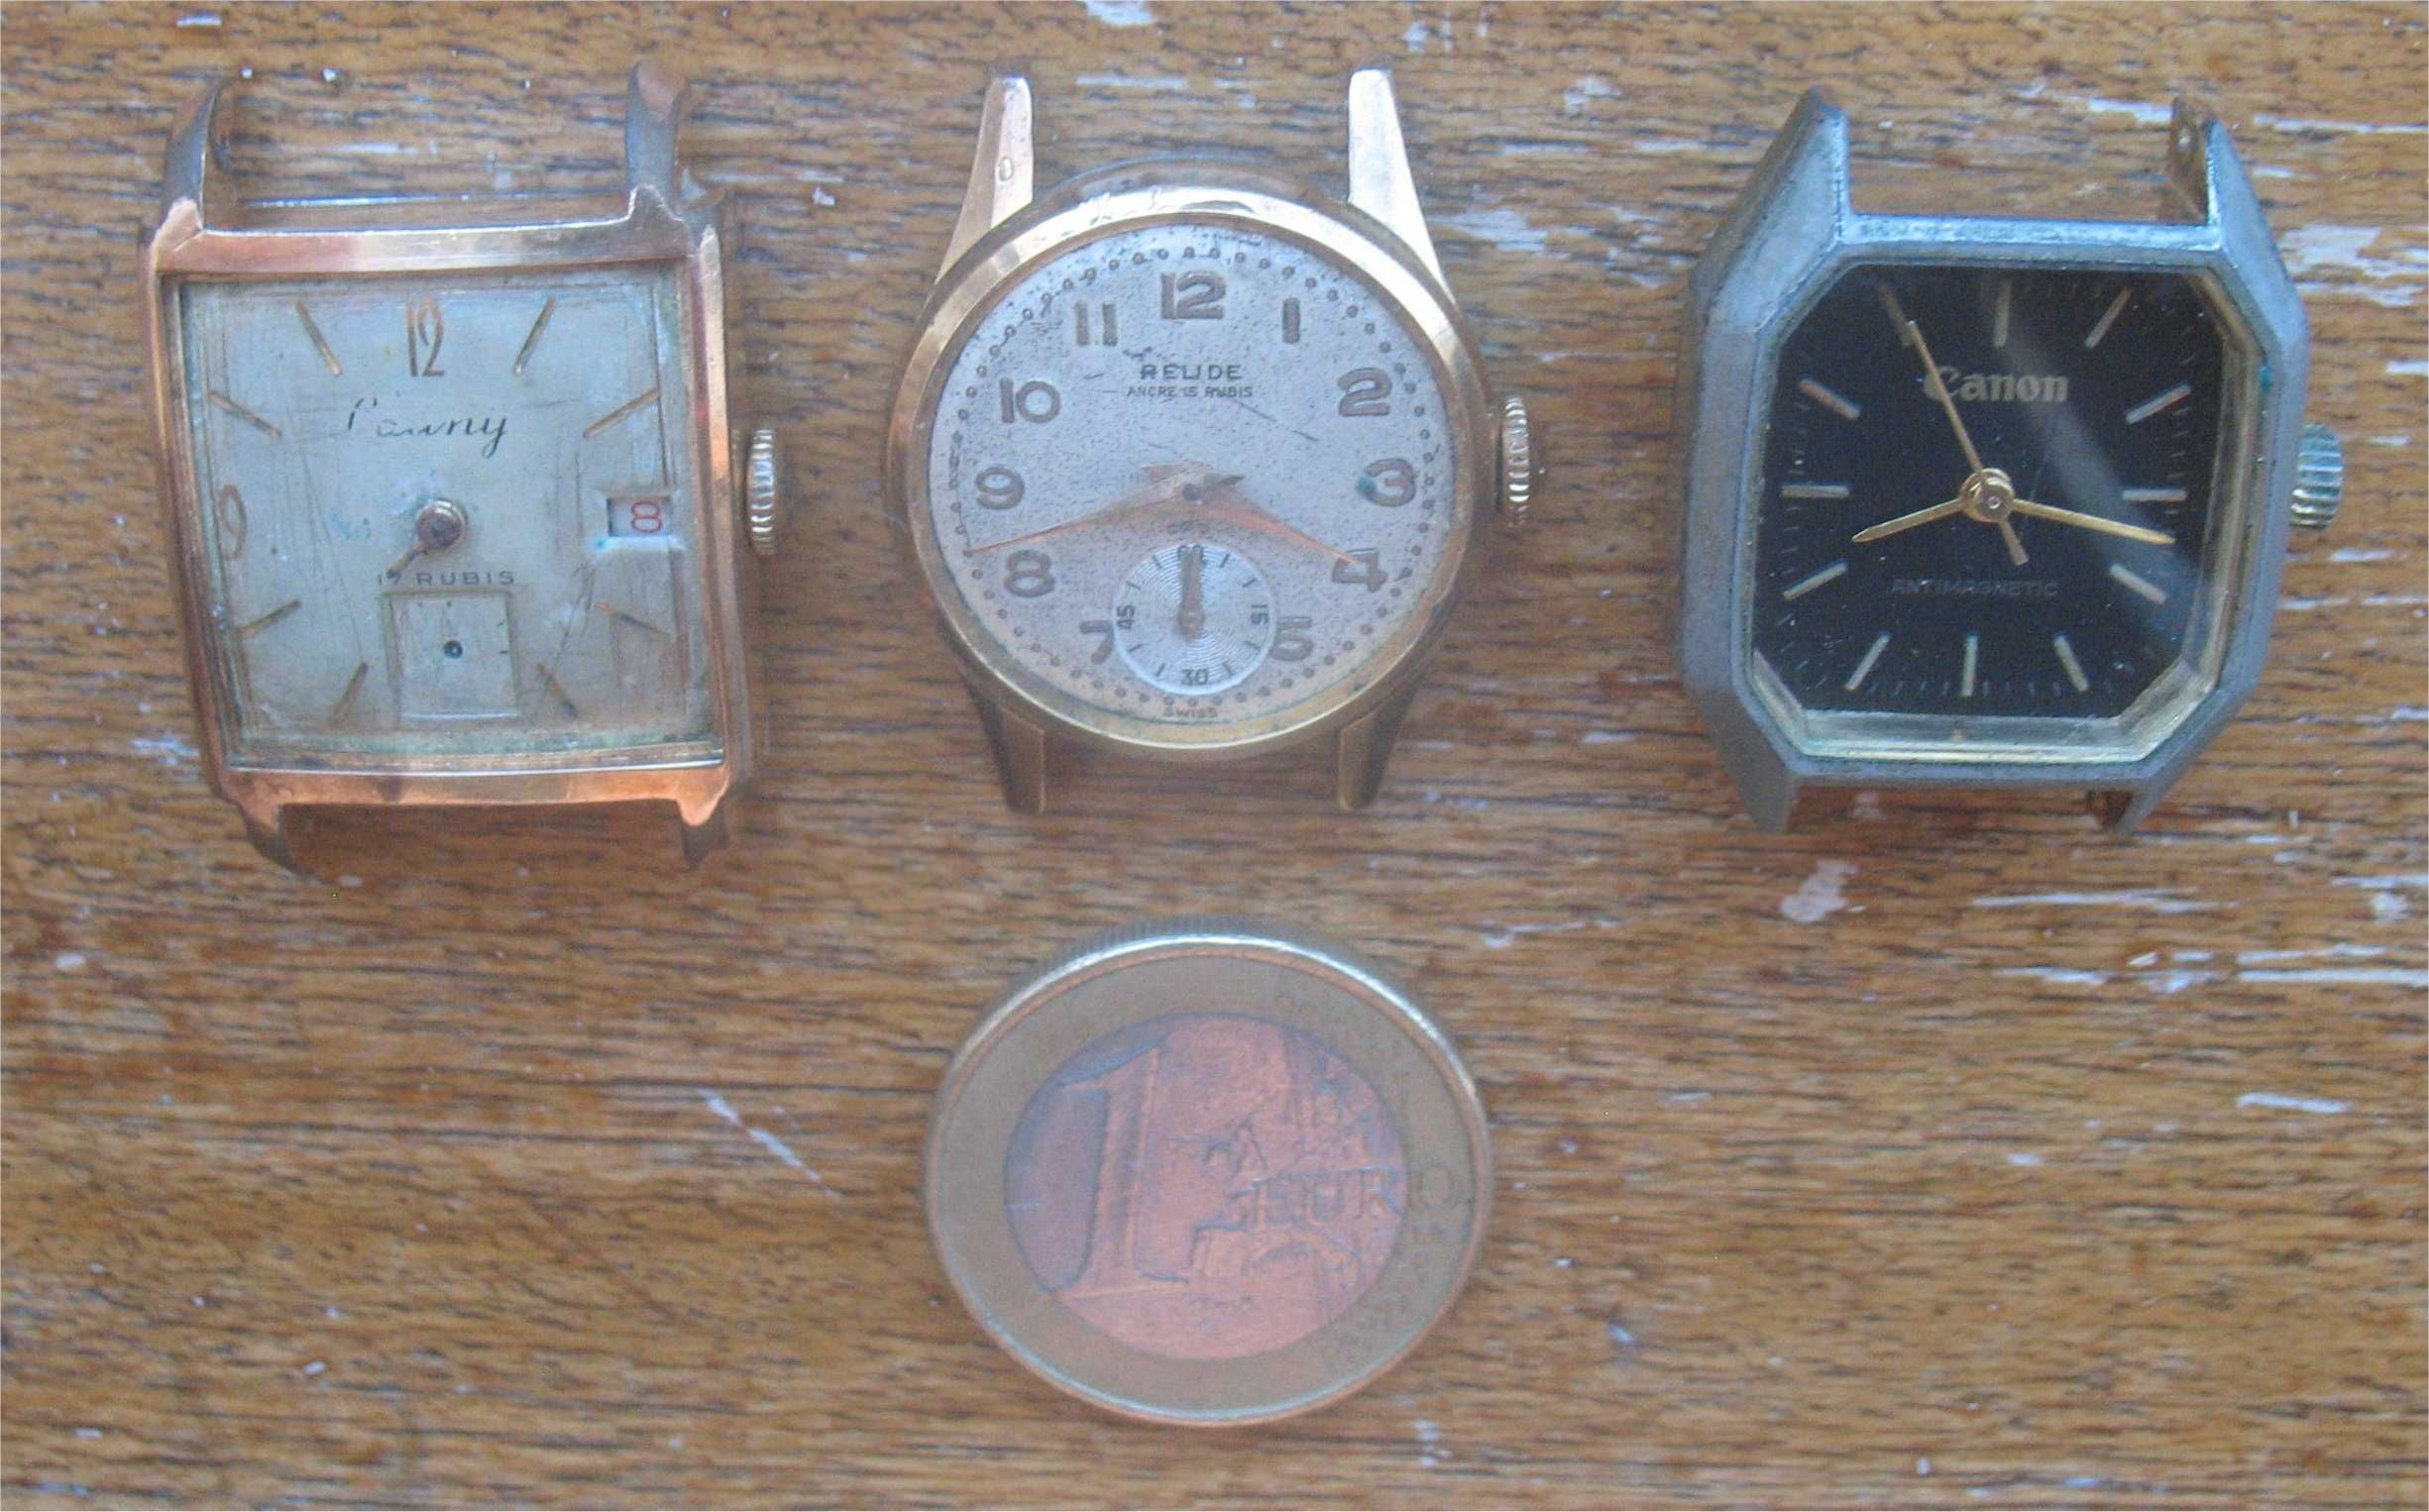 3 Relógios de Corda (Cauny,Relide,Canon) - senhora p/peças ou restauro